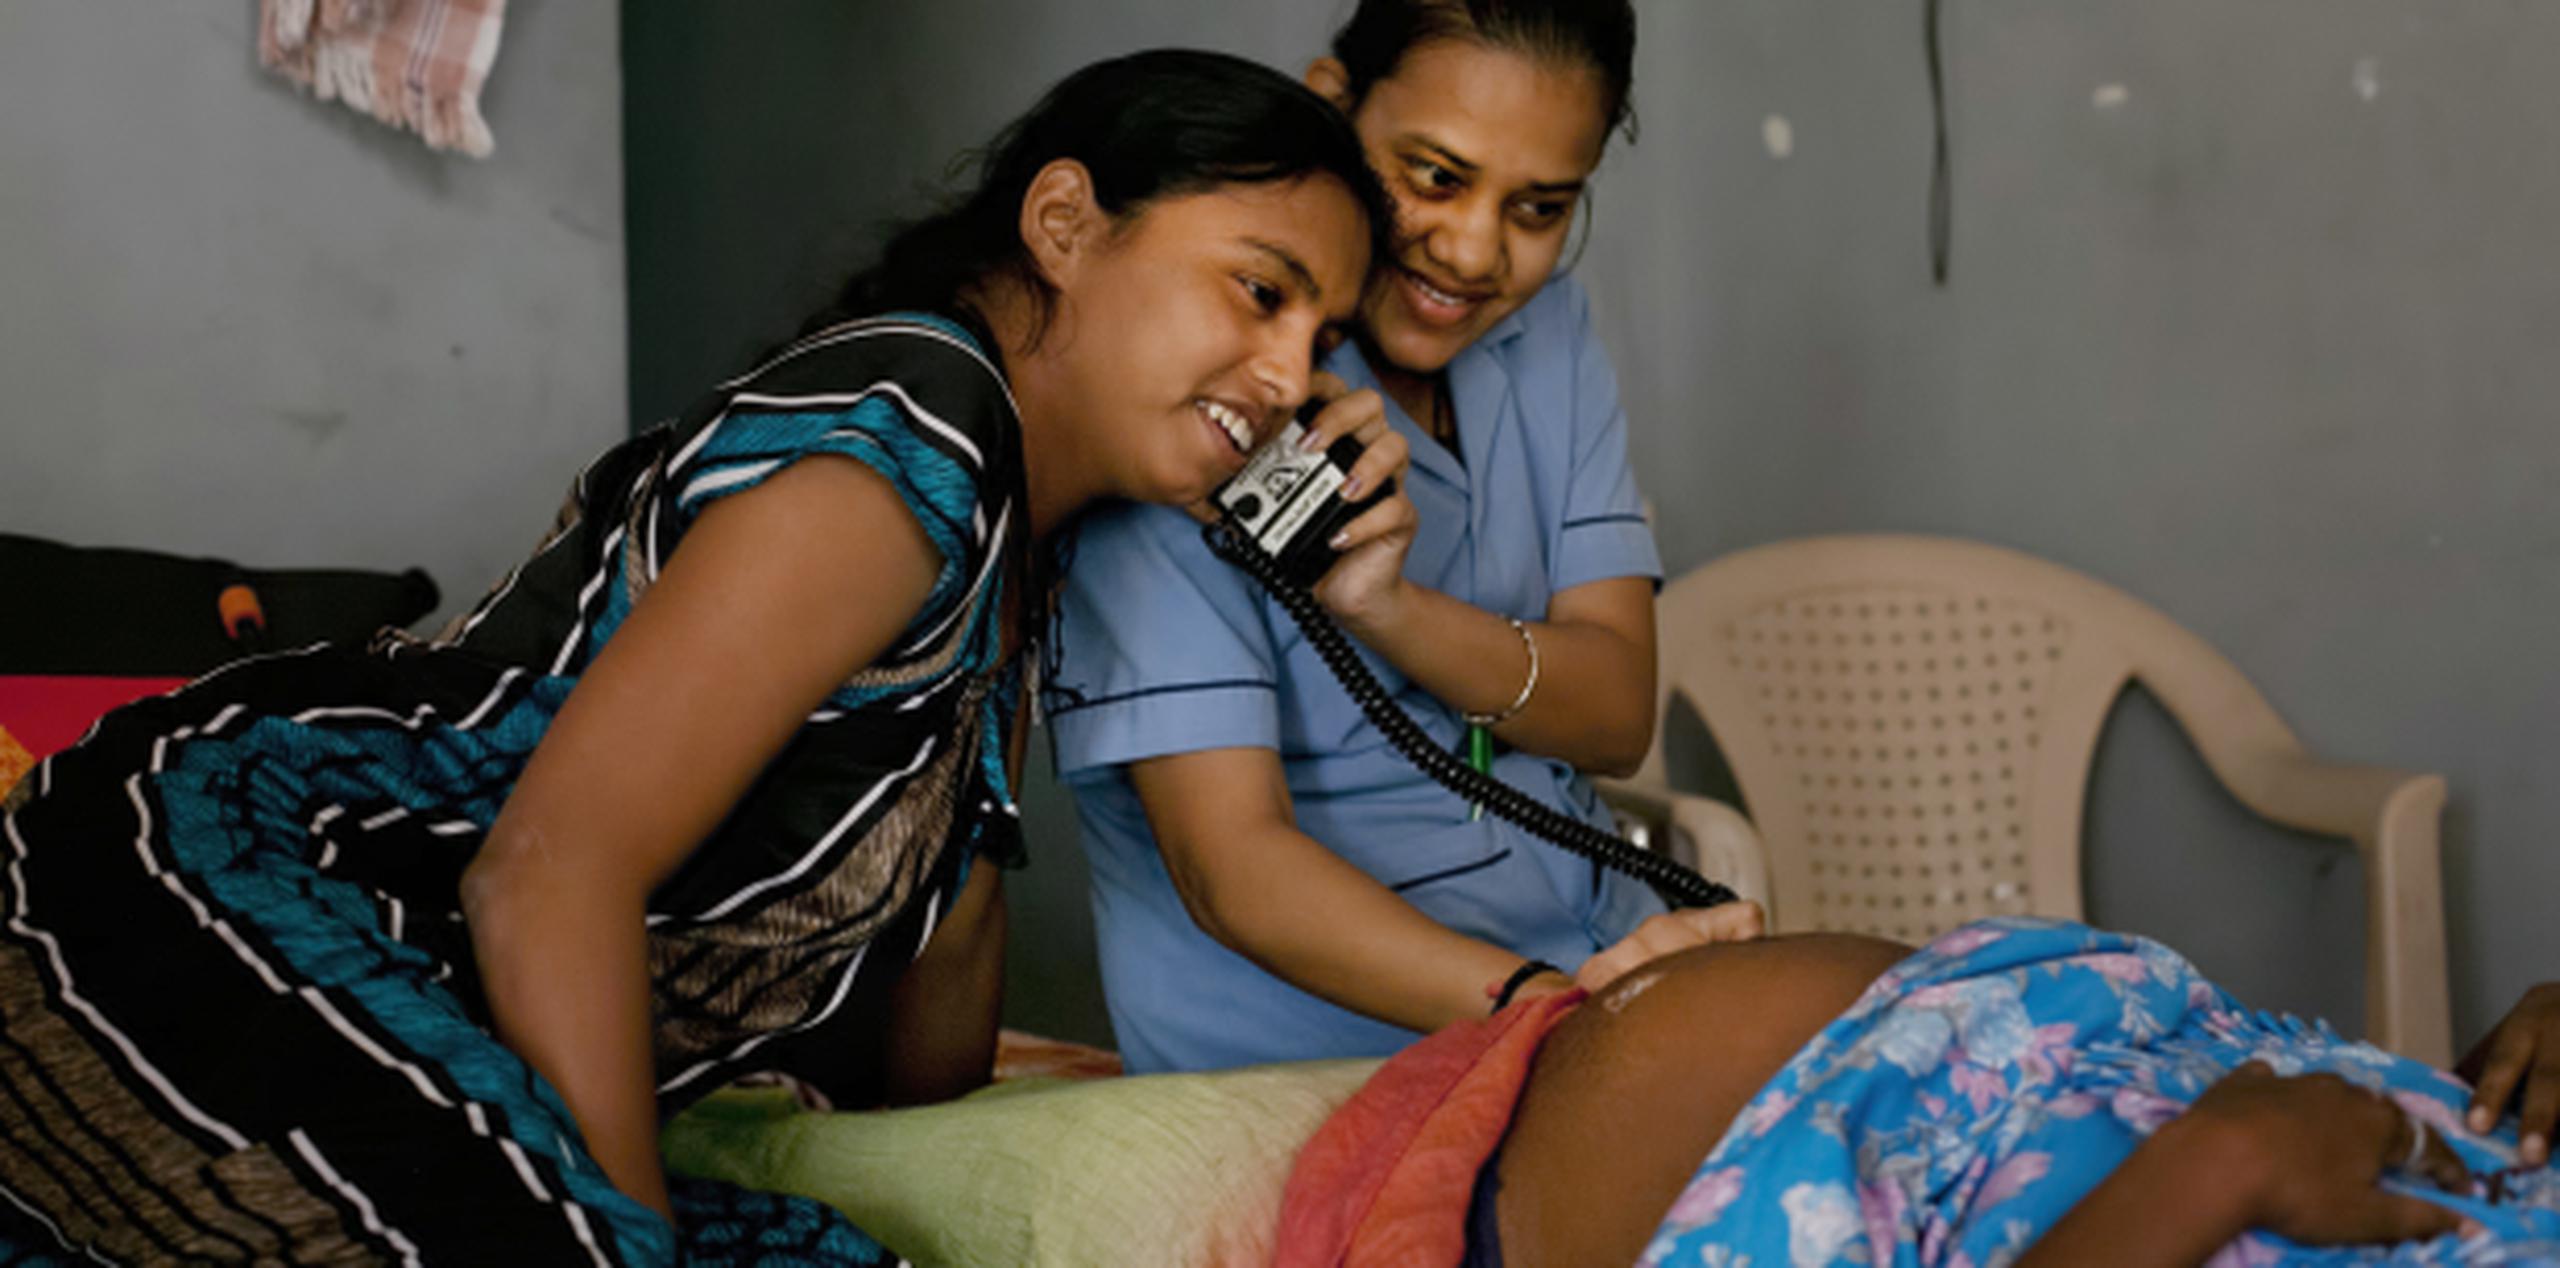 Para el 2009 en India se estimaba que existen cerca de 3,000 clínicas que ofrecen estos servicios en una industria que mueve cifras millonarias. (AP)